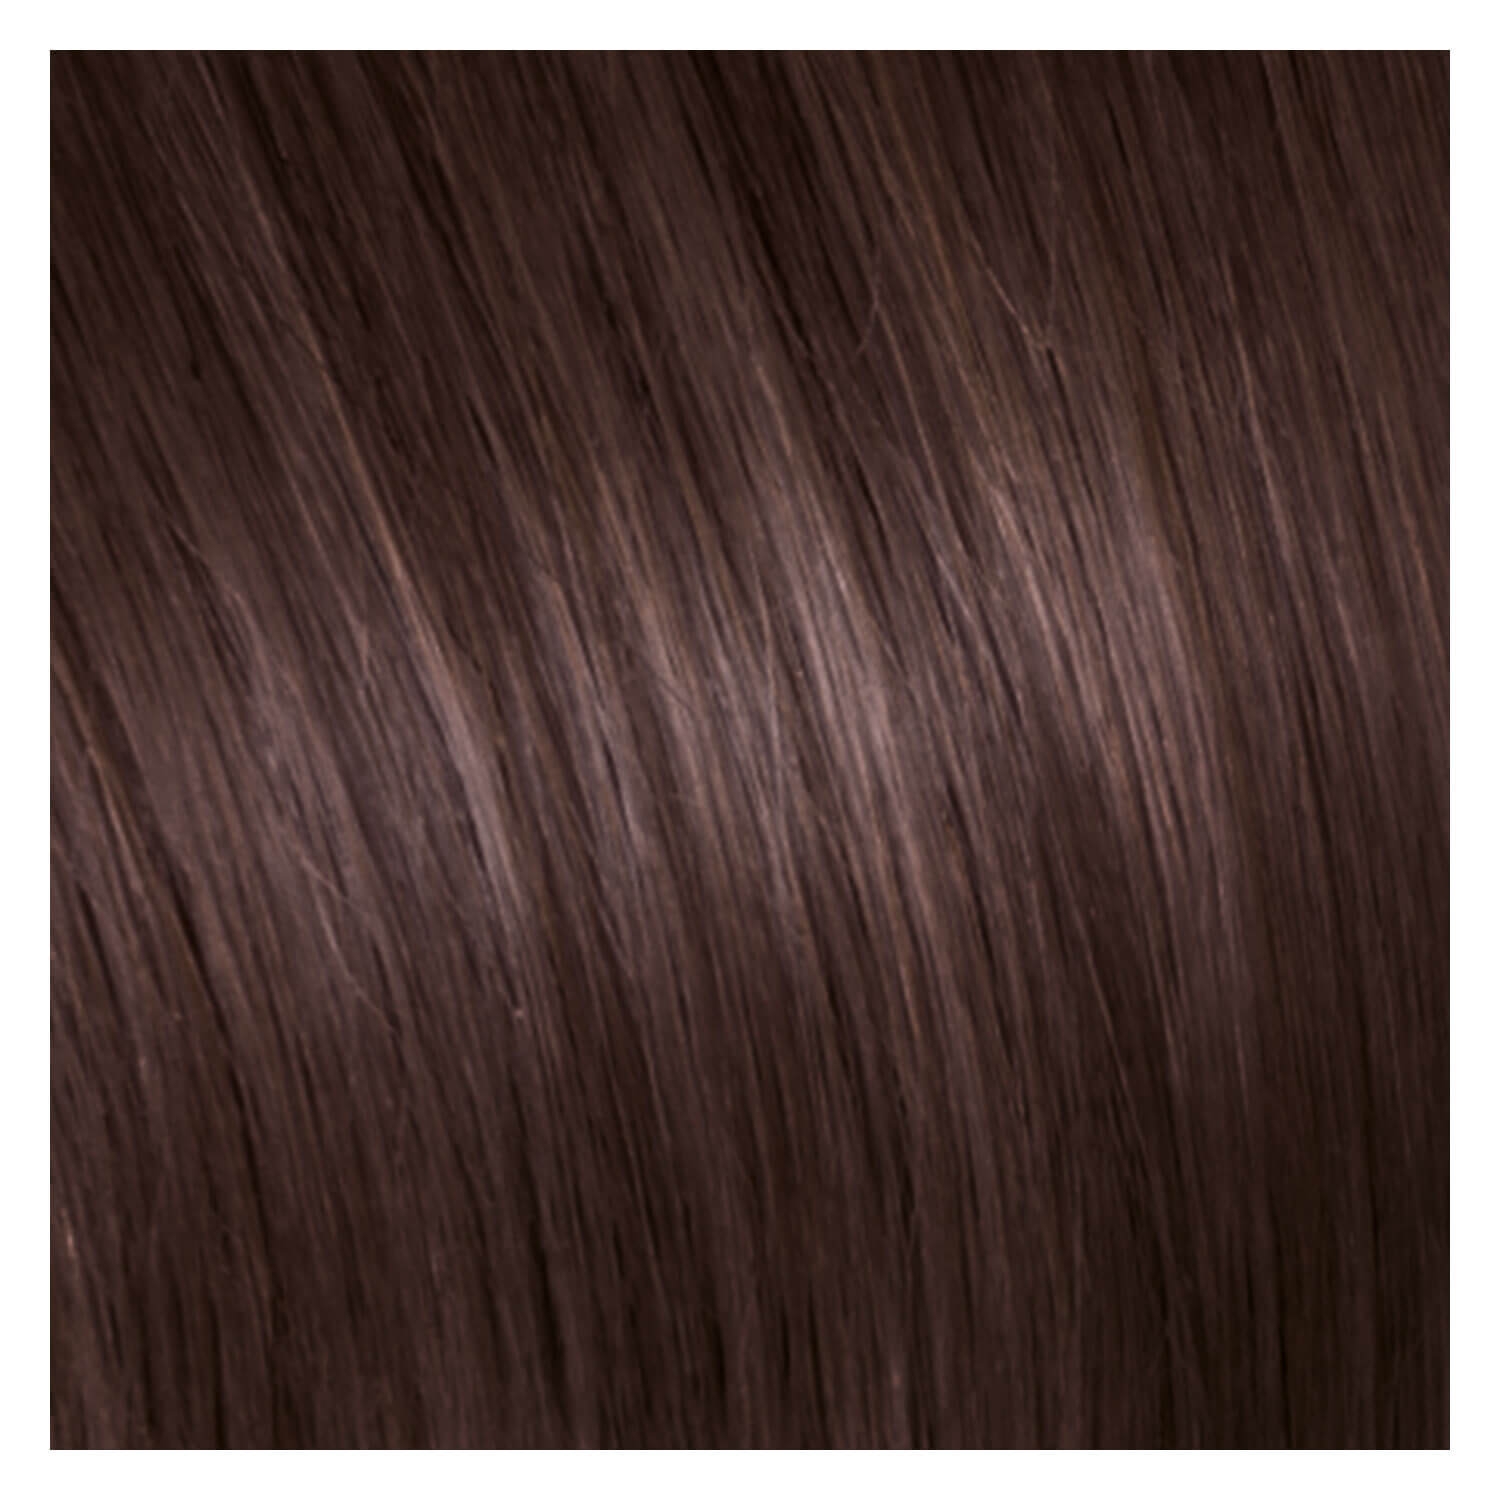 Produktbild von SHE Clip In-System Hair Extensions - 6 Helles Kastanienbraun 50/55cm